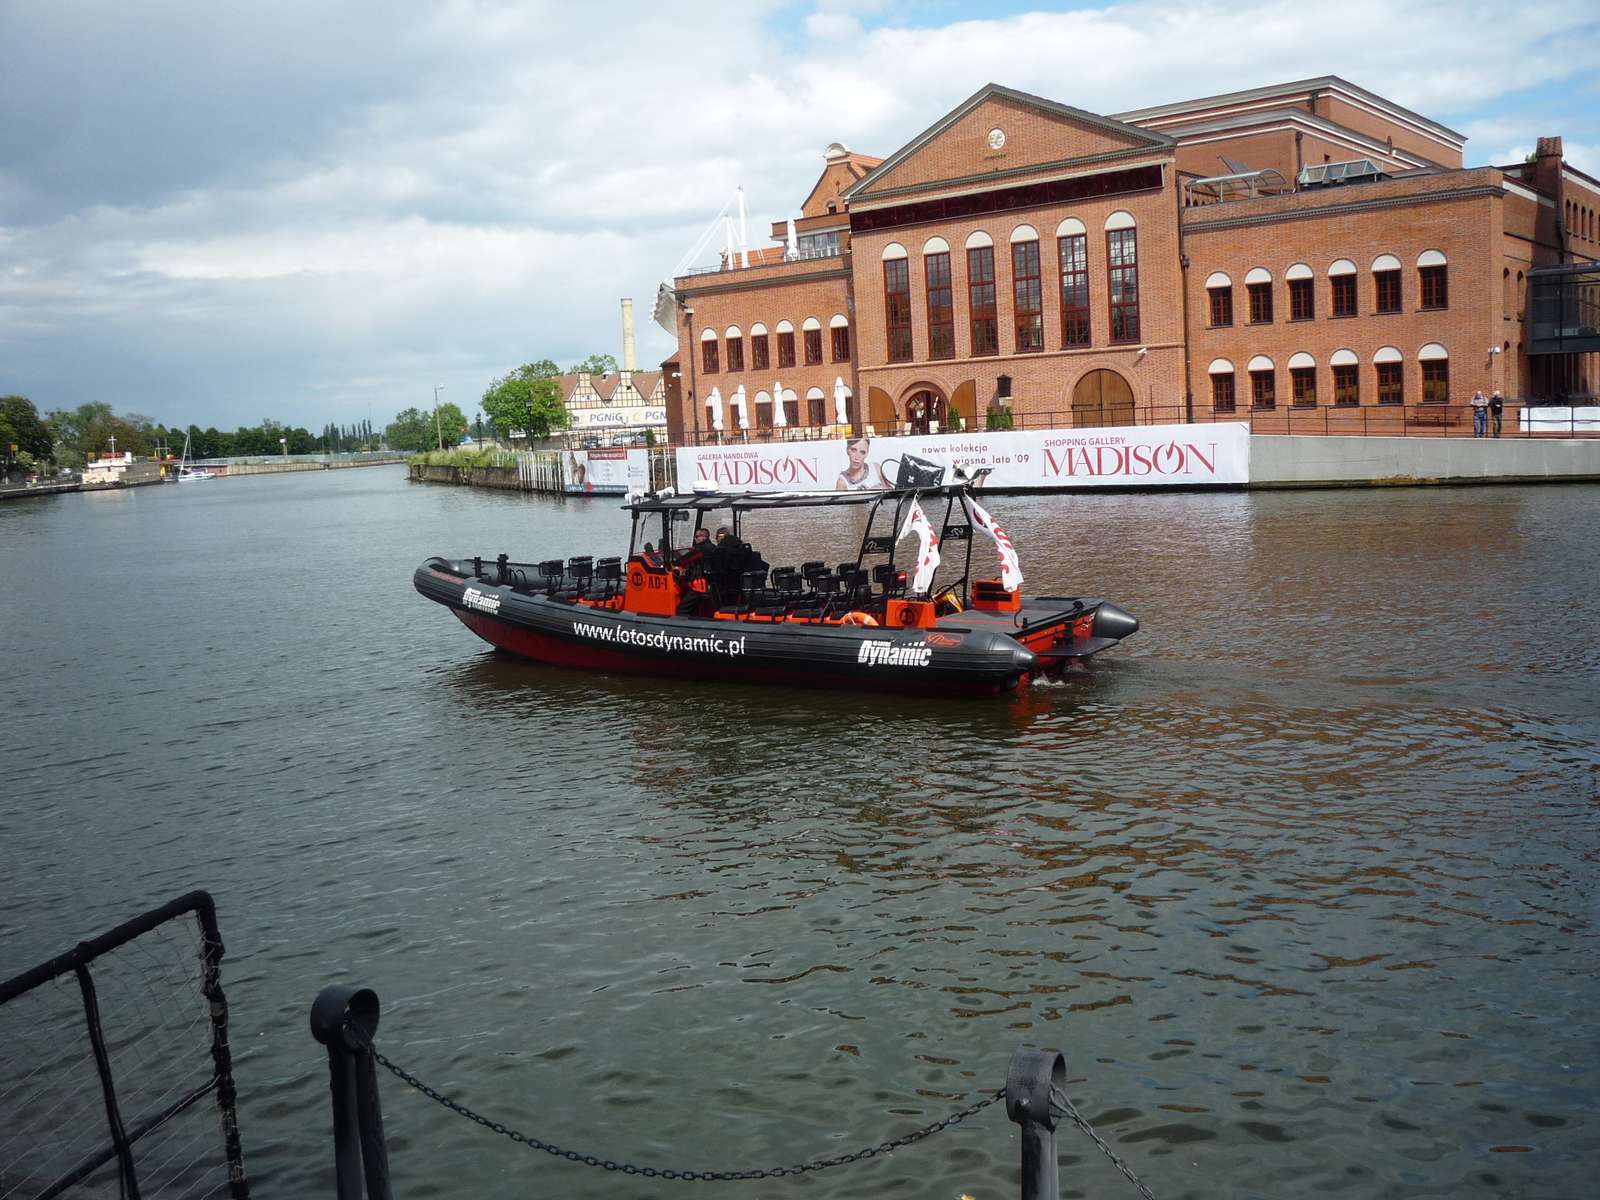 Моторная лодка на реке Мотлава в Гданьске, 2009 год. пазл онлайн